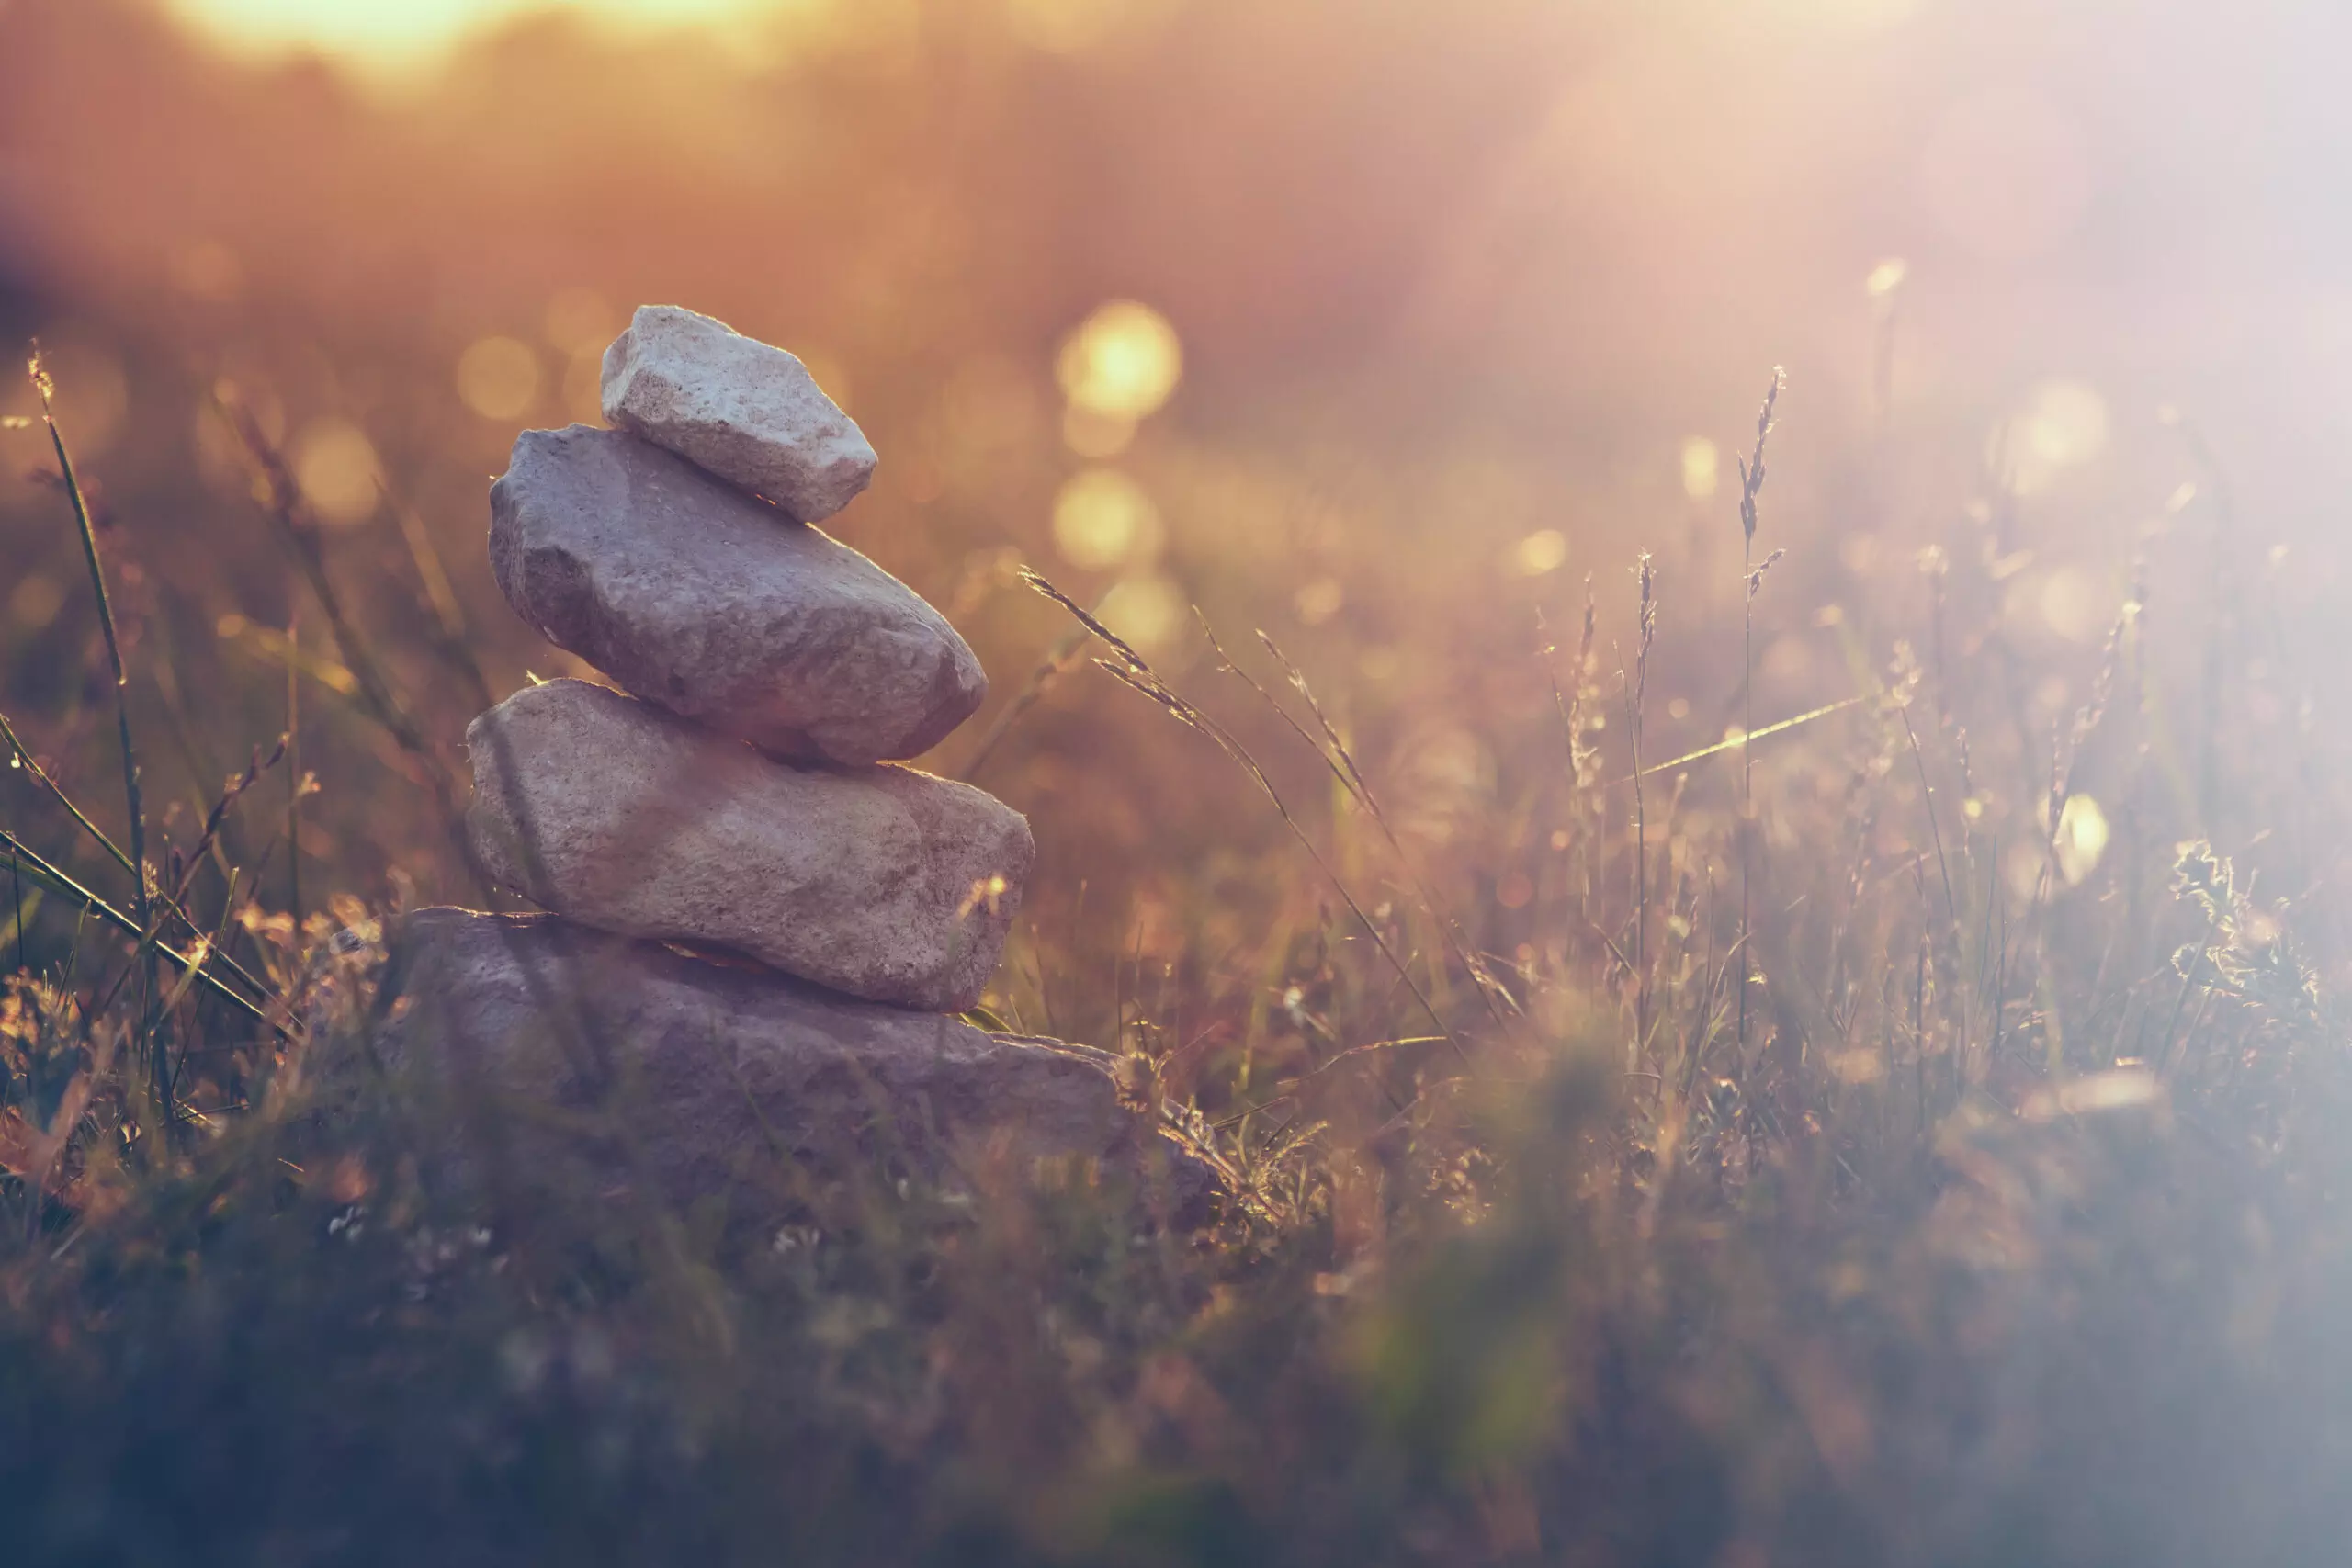 Zen stones stacked in sunset meadow.